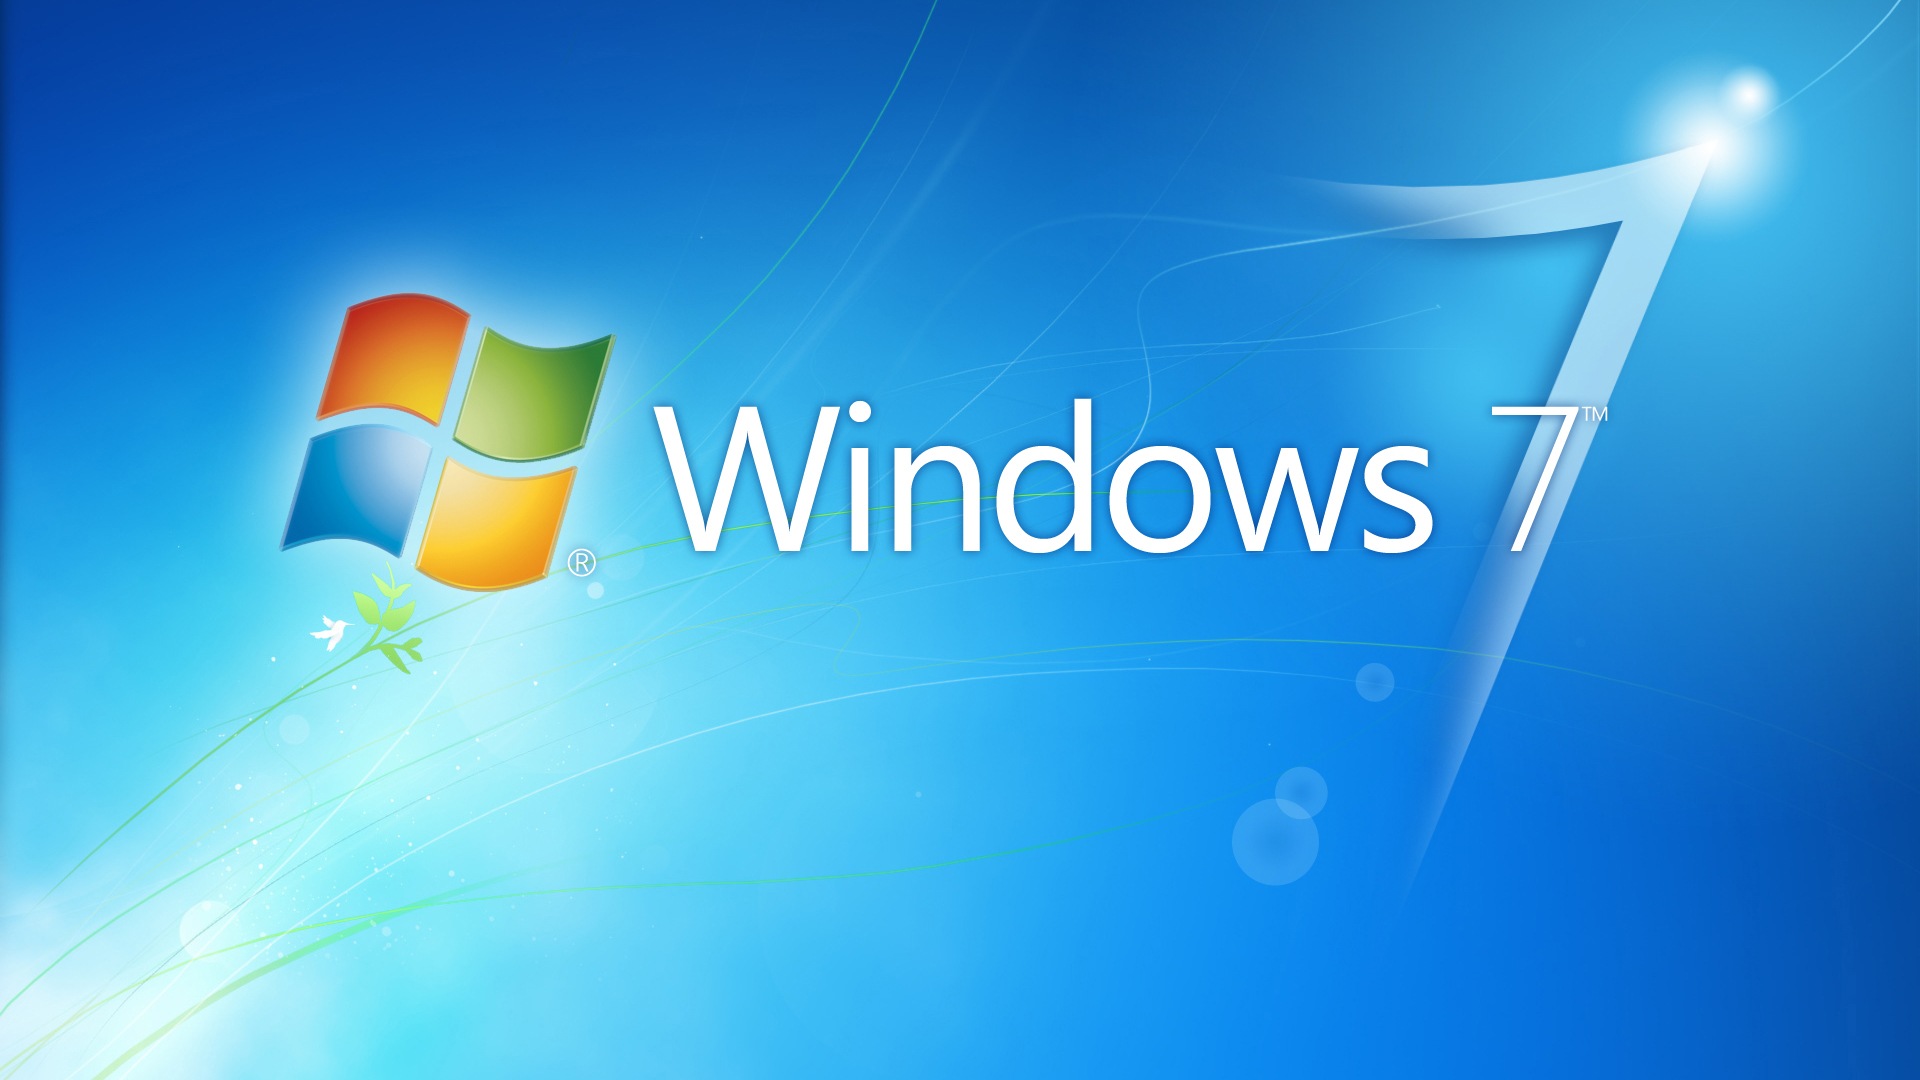 Win 7 re. Виндовс. Виндовс 7. Windows 7 рабочий стол. Обои Windows 7.